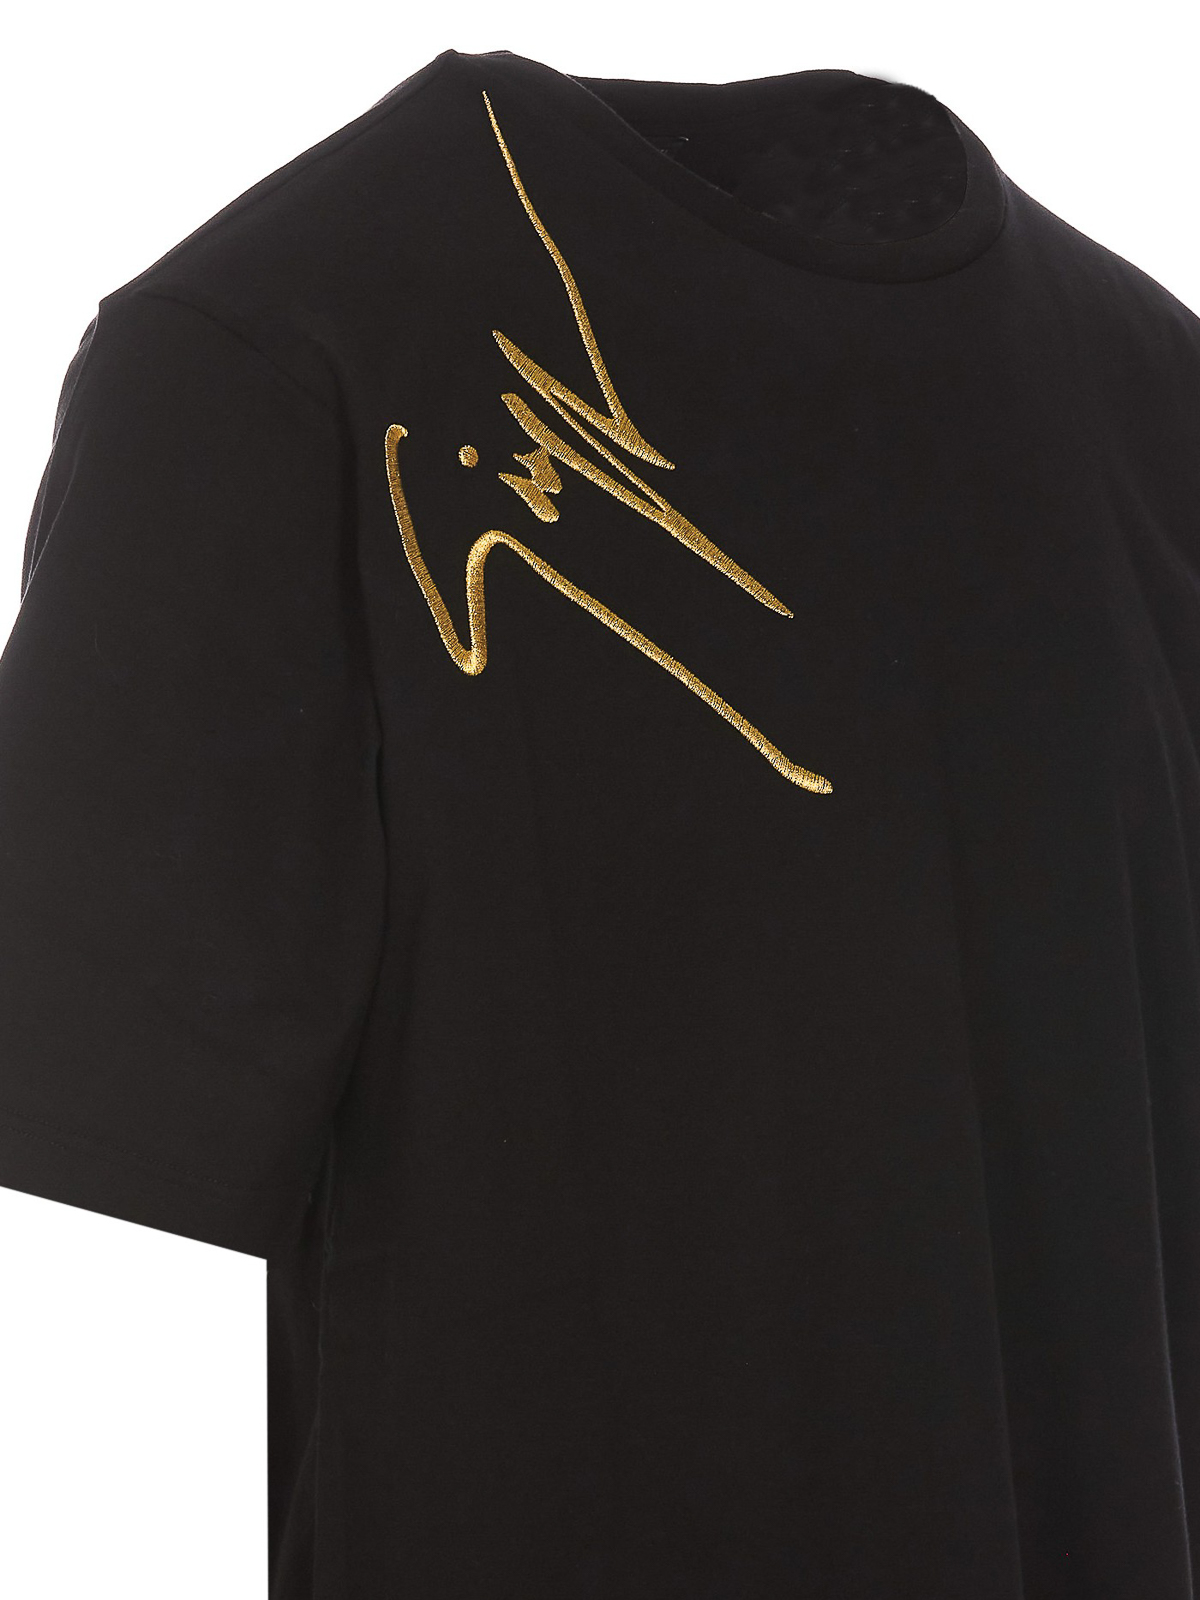 Det Ældre Regn T-shirts Giuseppe Zanotti - Logo embroidery T-shirt - ERU3008002